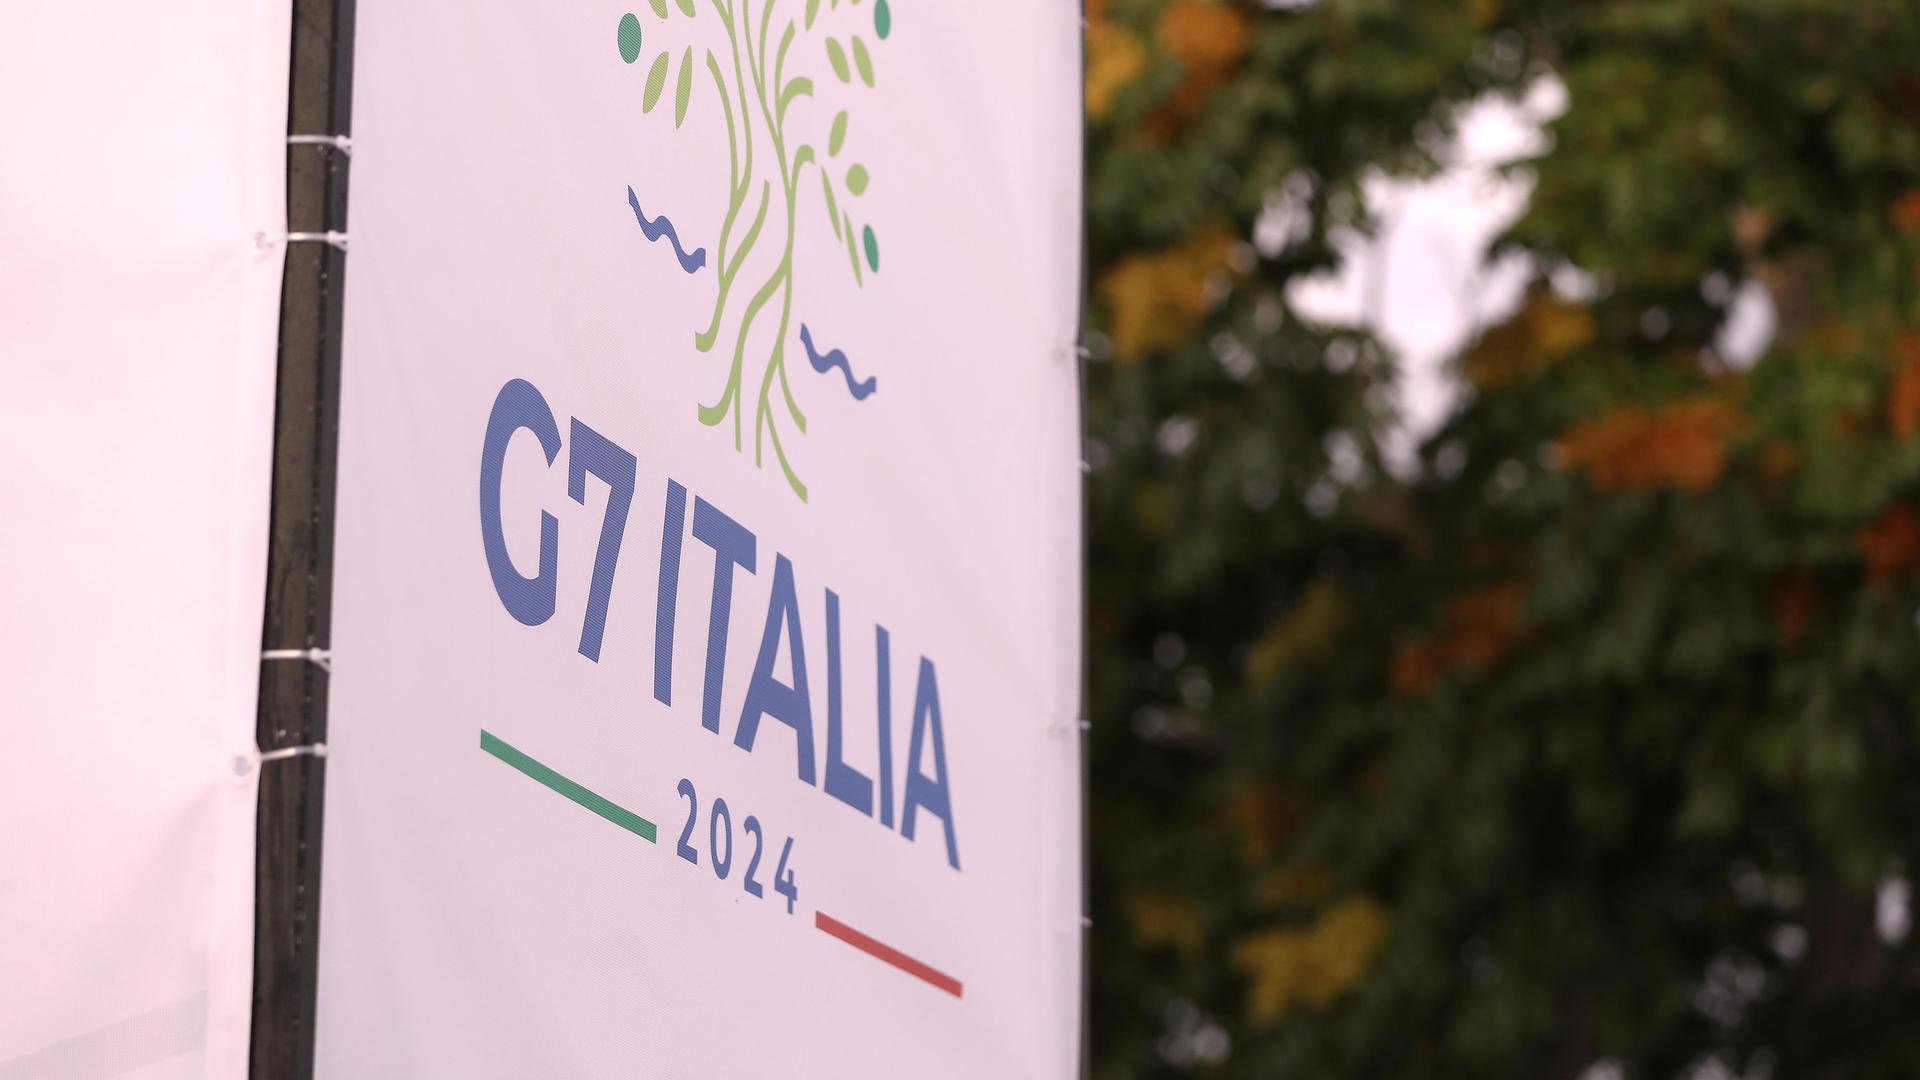 Das Logo des G7-Gipfels in Italien auf einem Banner, im Hintergrund sind Bäume zu erkennen. 